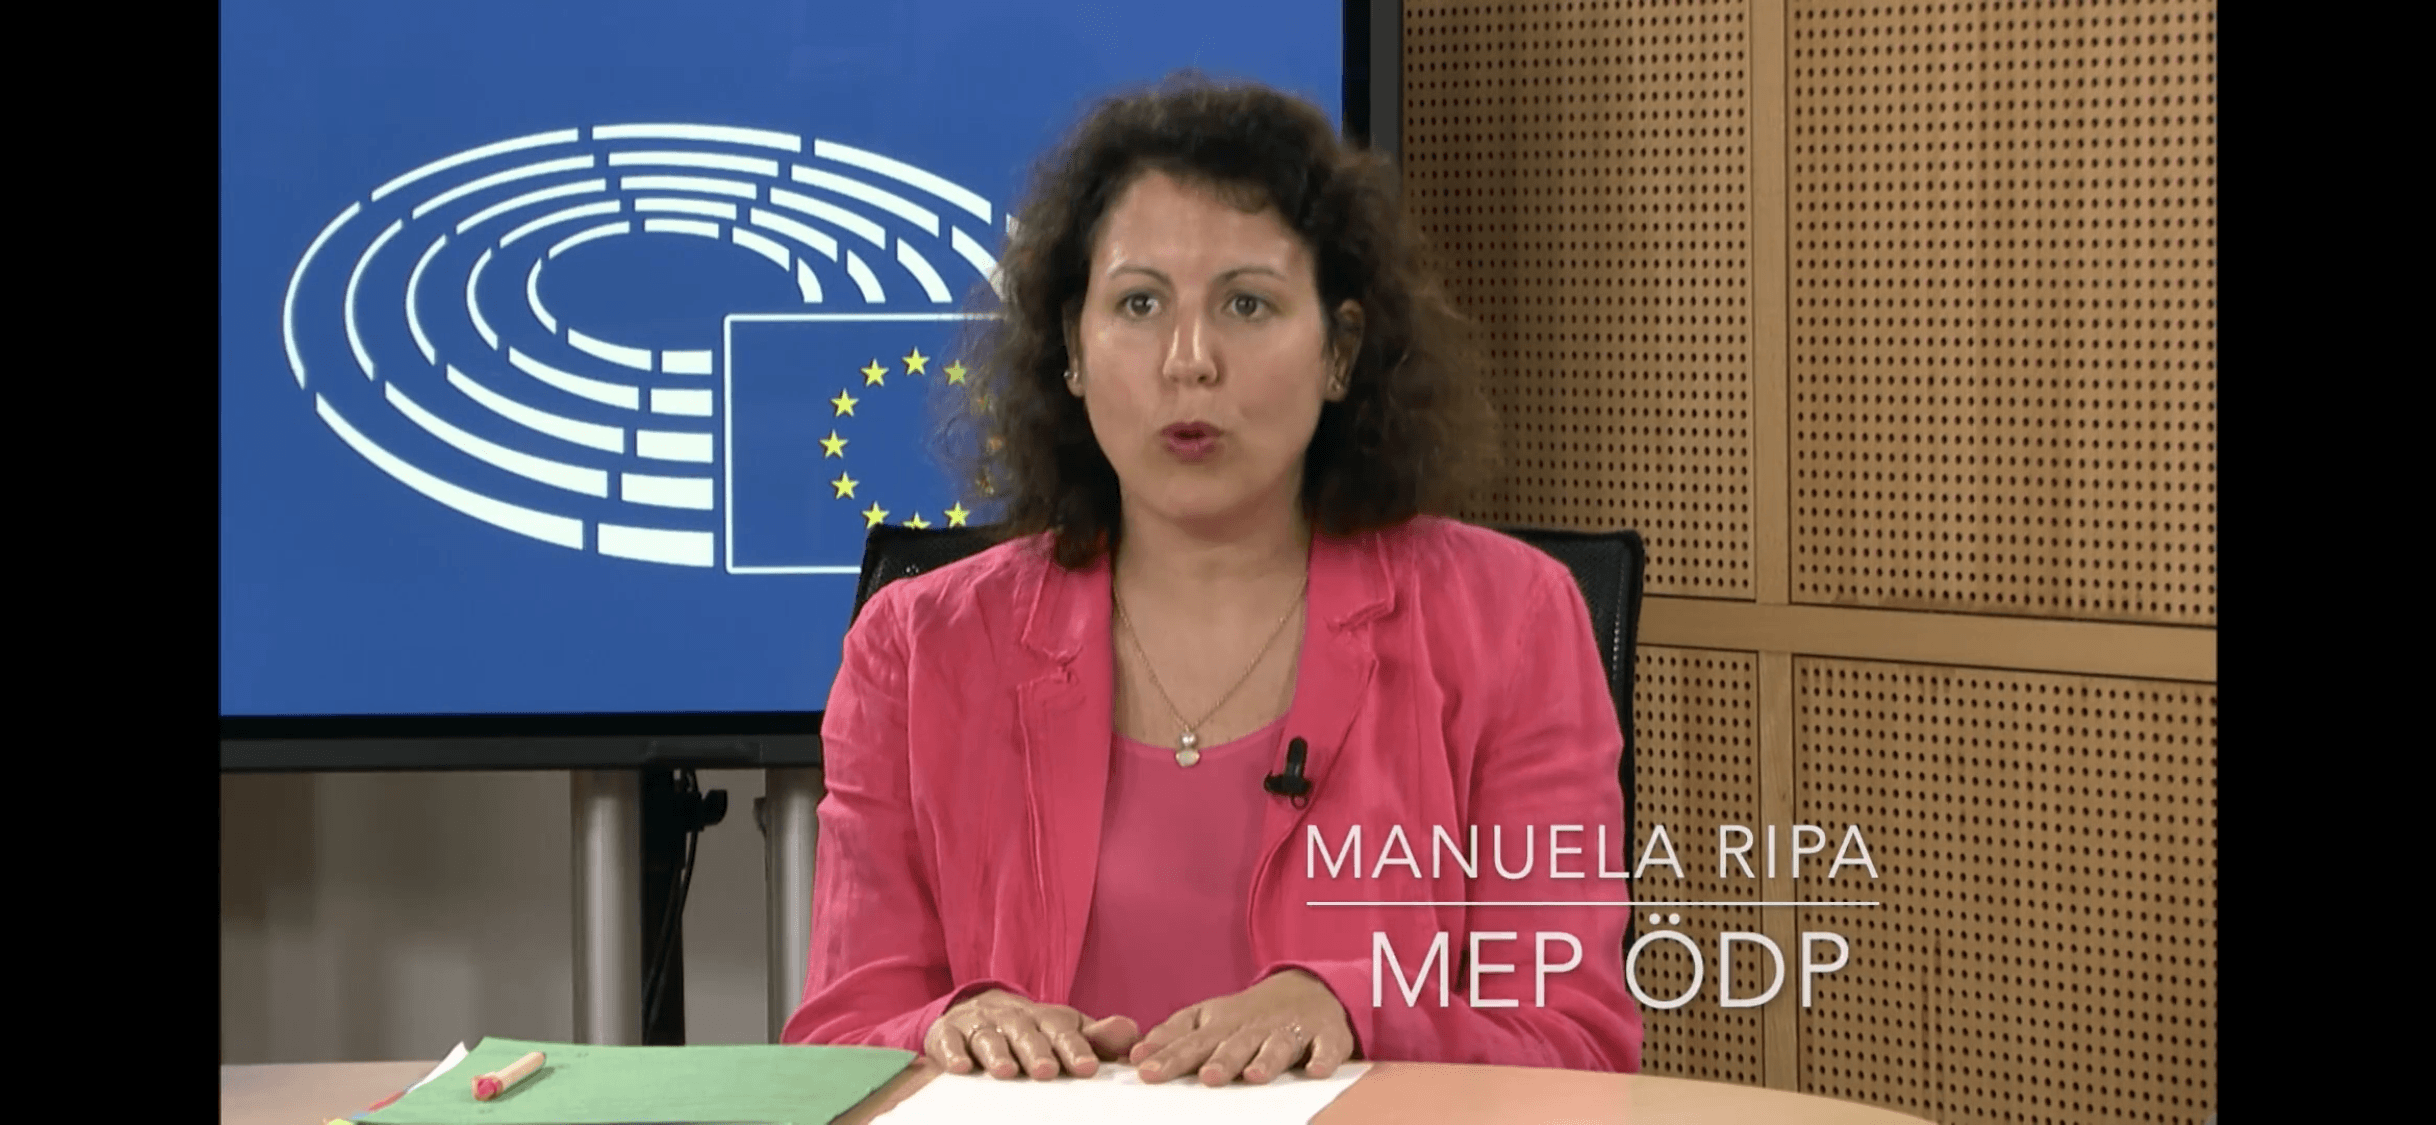 Manuela Ripa  MEP ÖDP